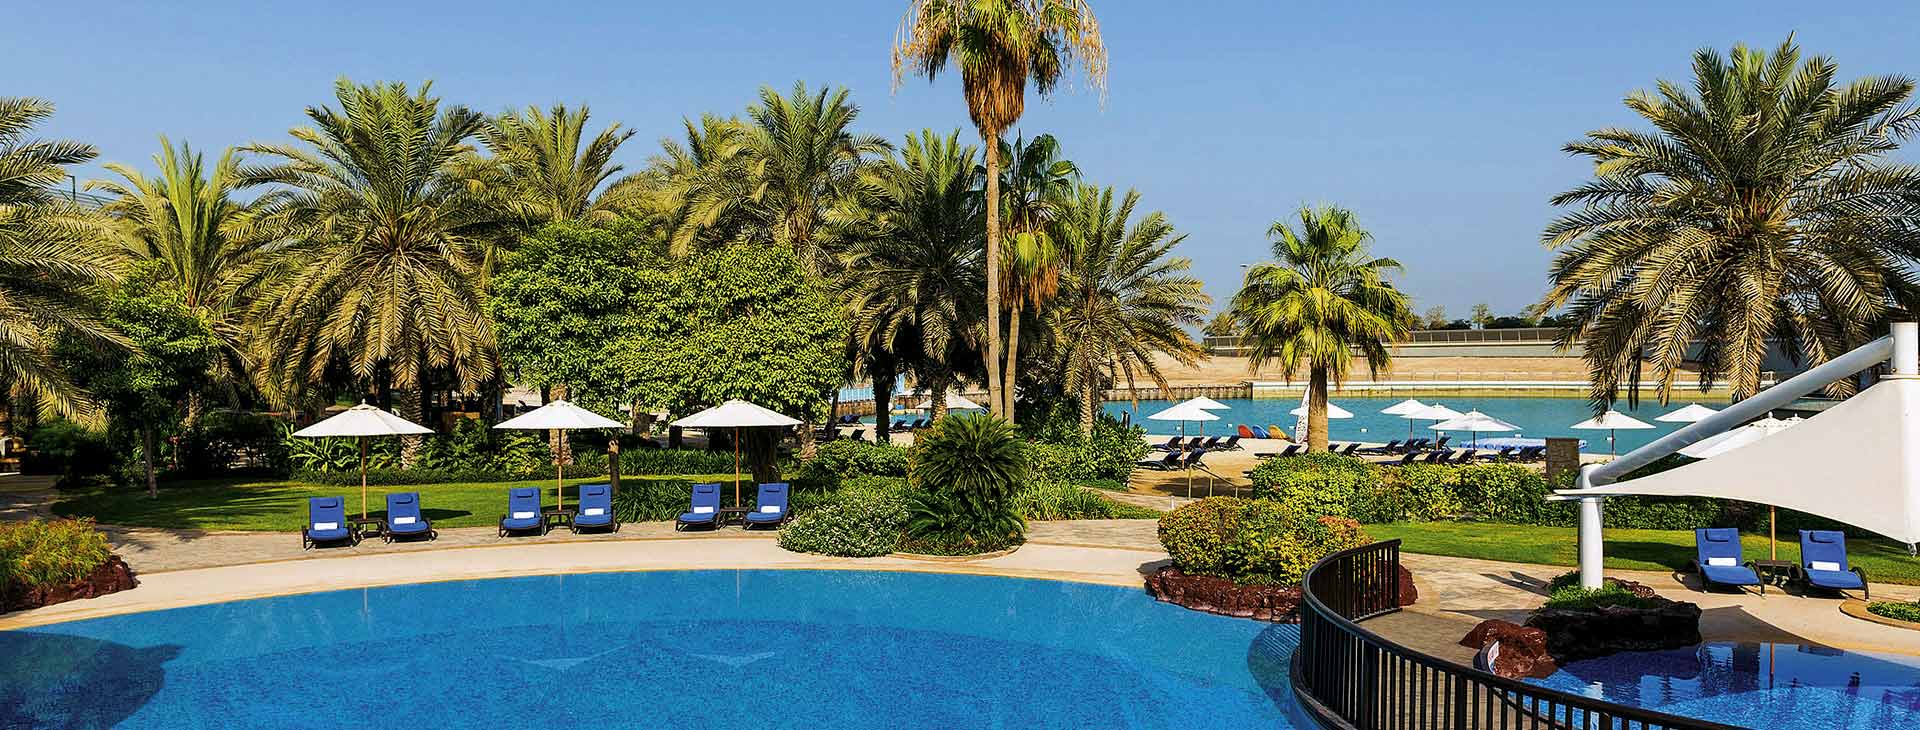 Sheraton Abu Dhabi Hotel and Resort Obrázok0